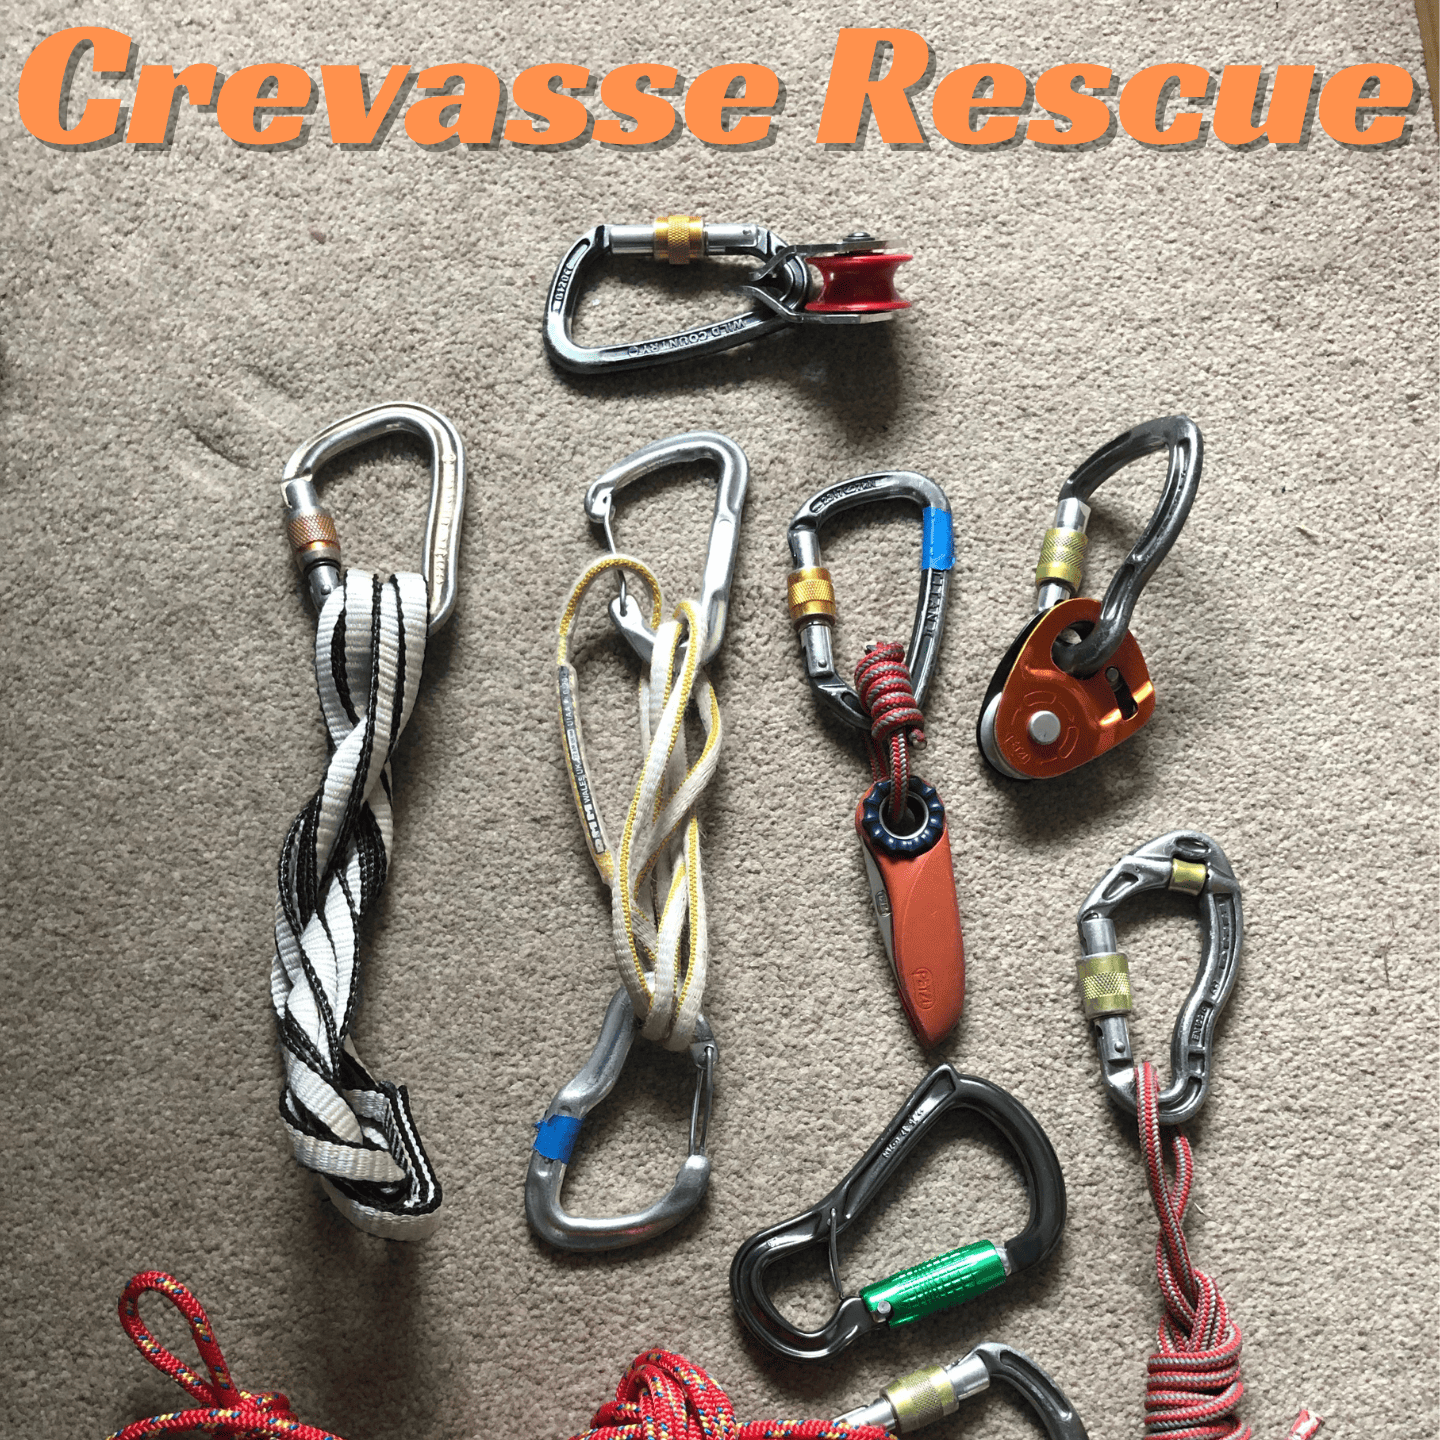 crevasse-rescue-training